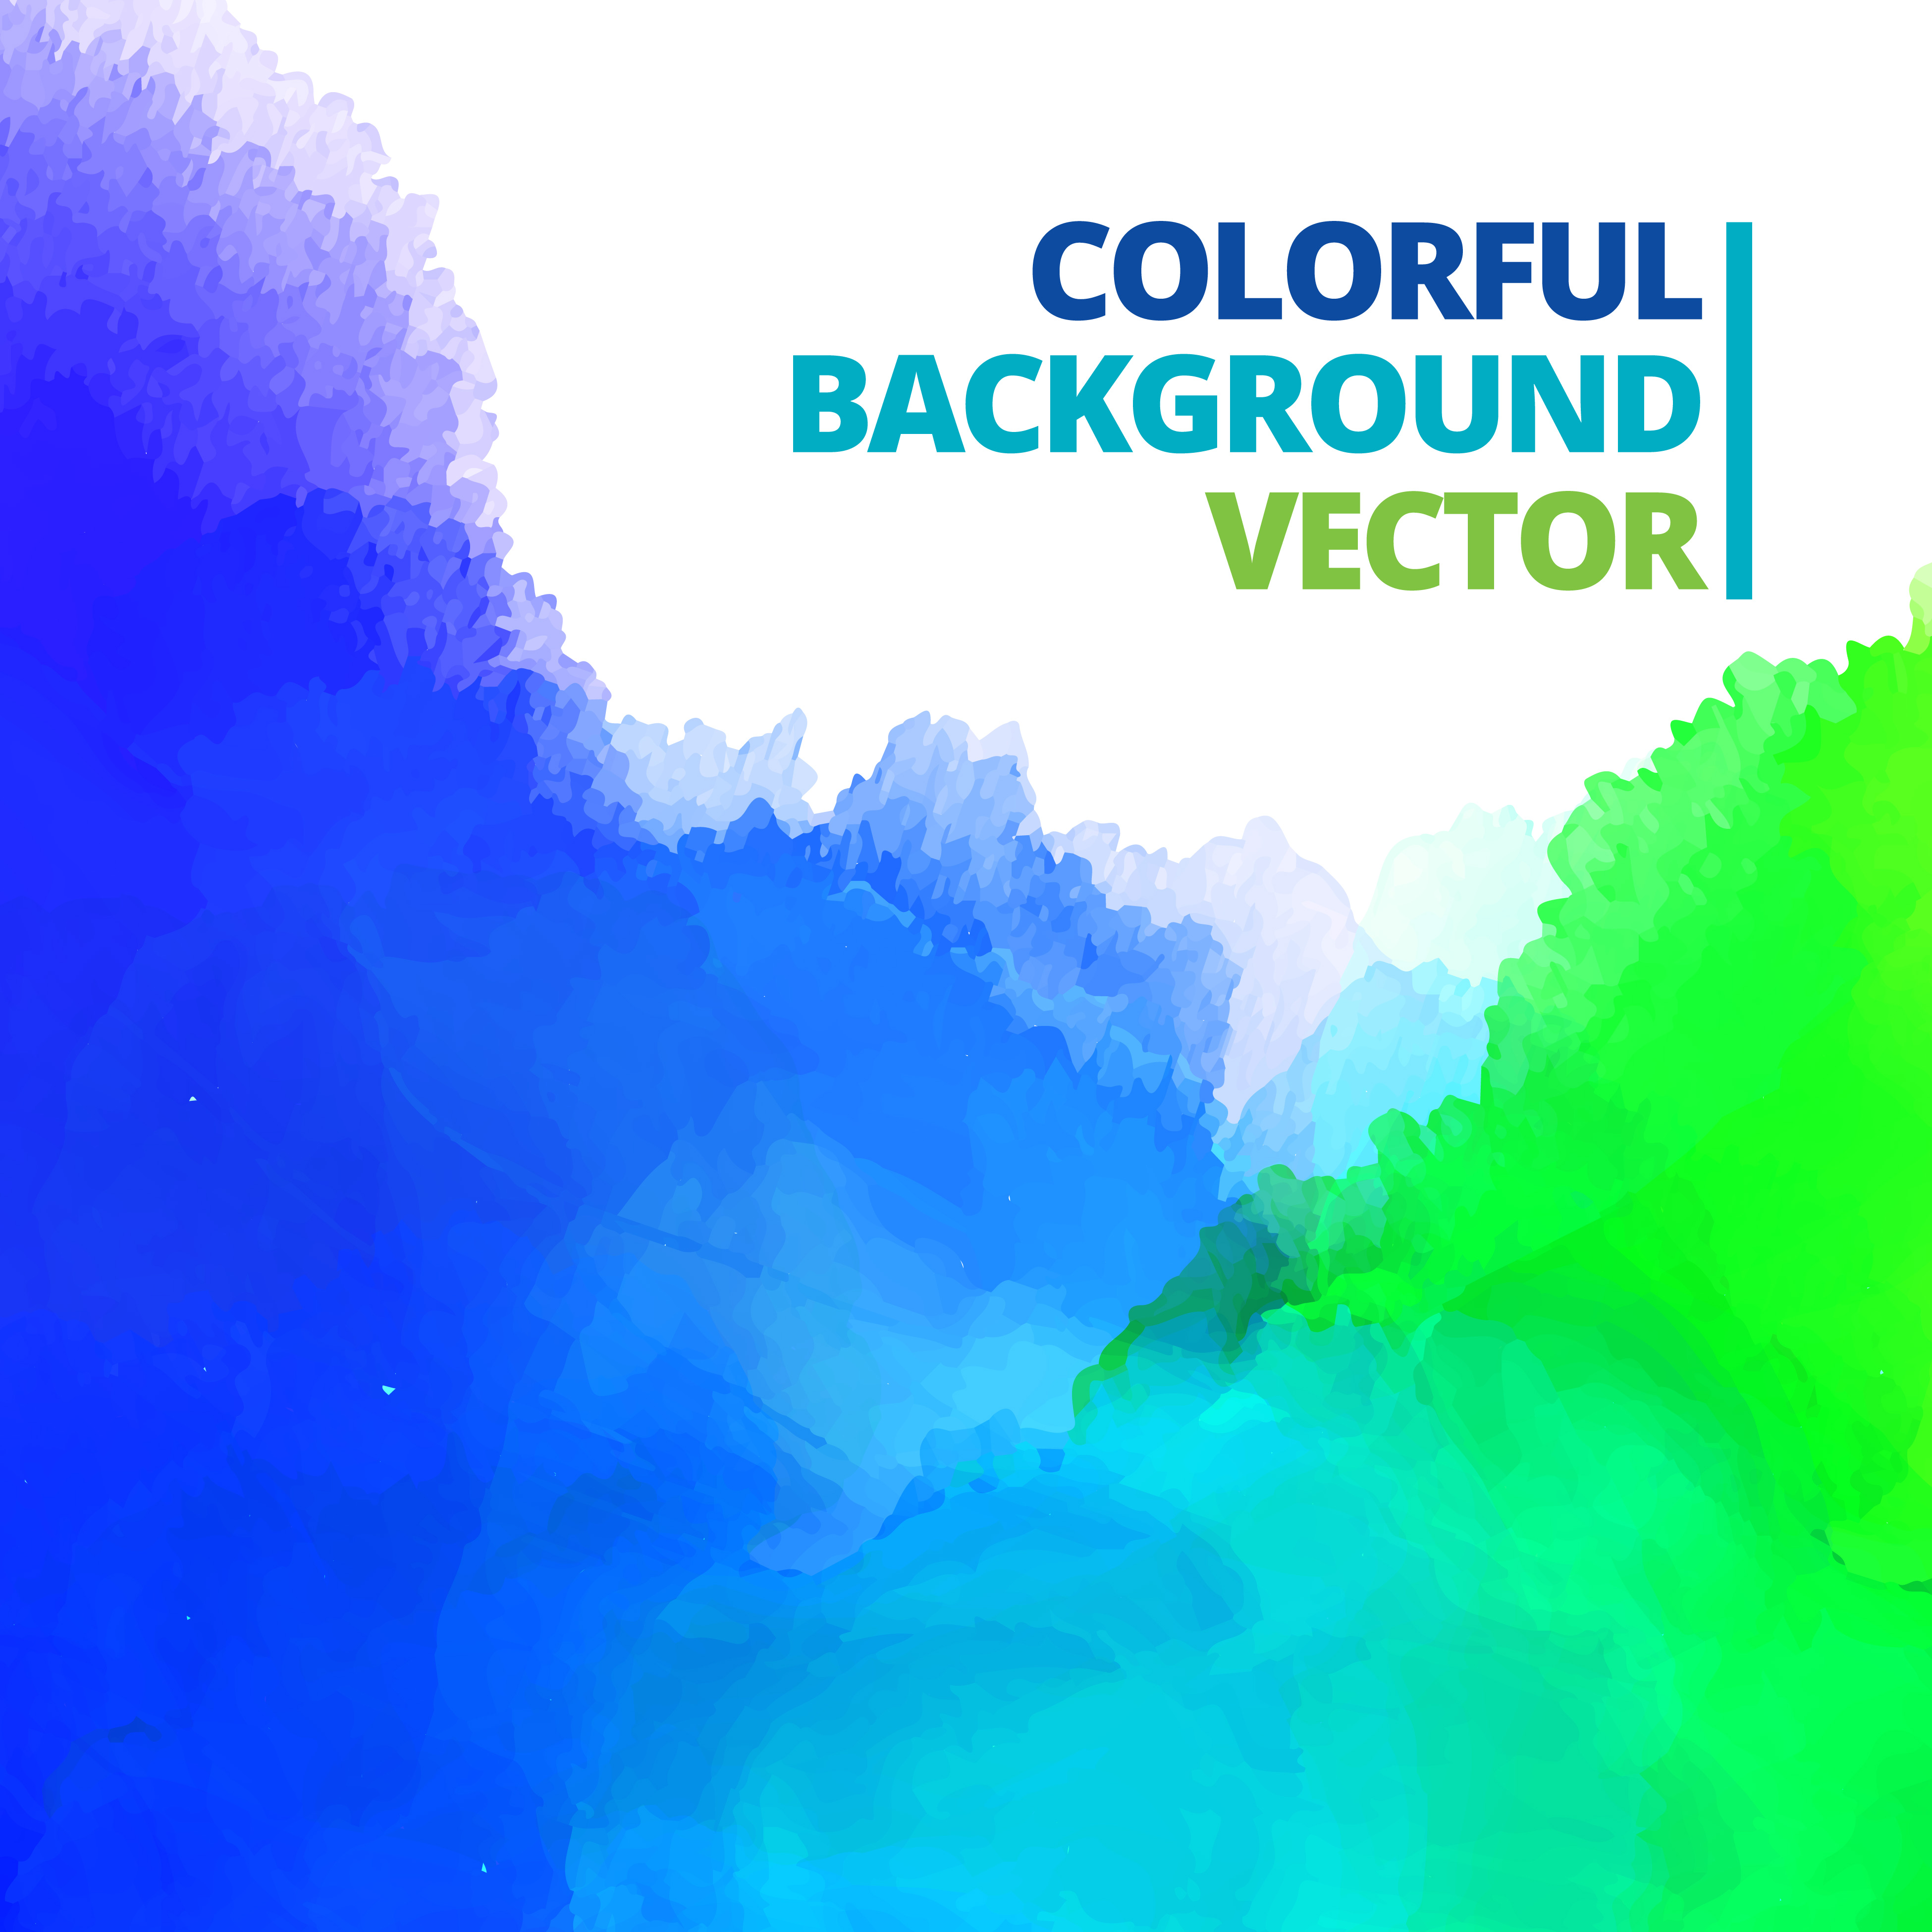 background of multi color ink splash vector 221490 - Download Free